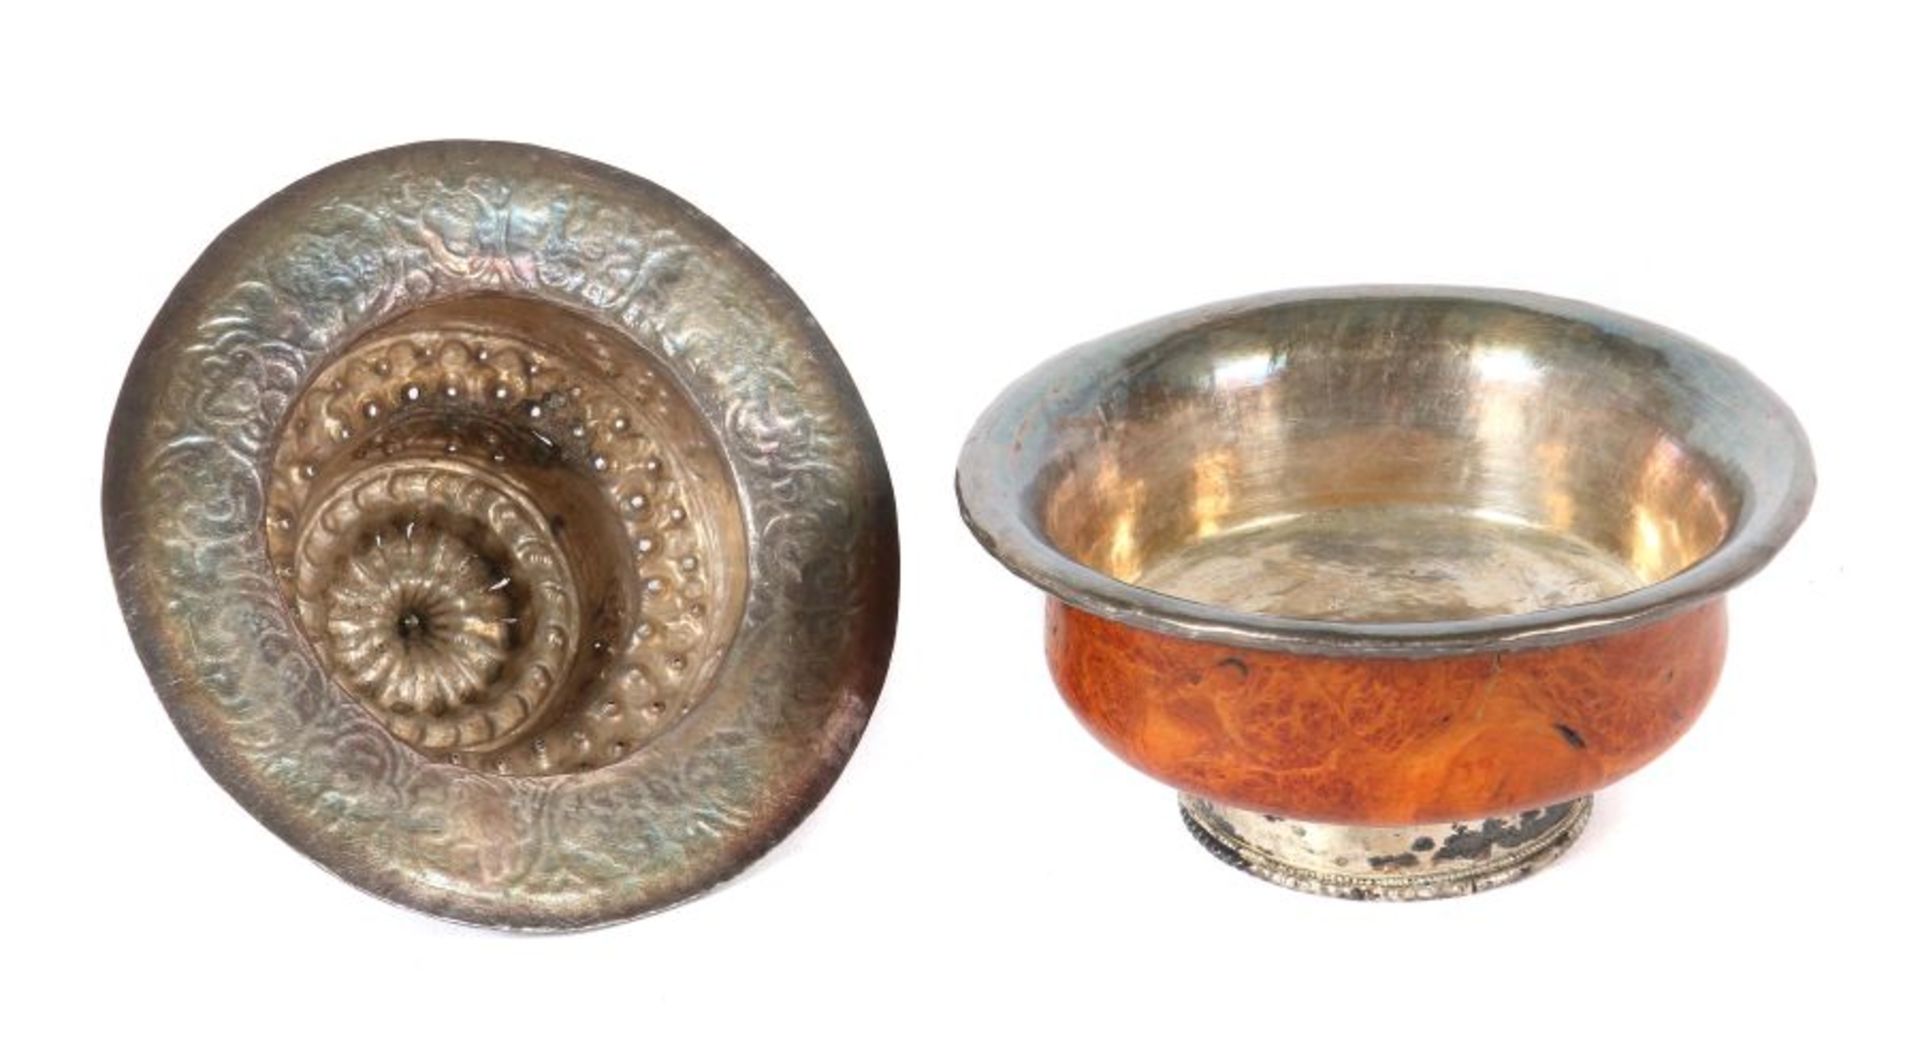 Teacup Tibet/Nepal, 20. Jh., Wurzelholz/Silber (säuregeprüft), Holzschale mit Silberbeschlag und - - Image 2 of 2